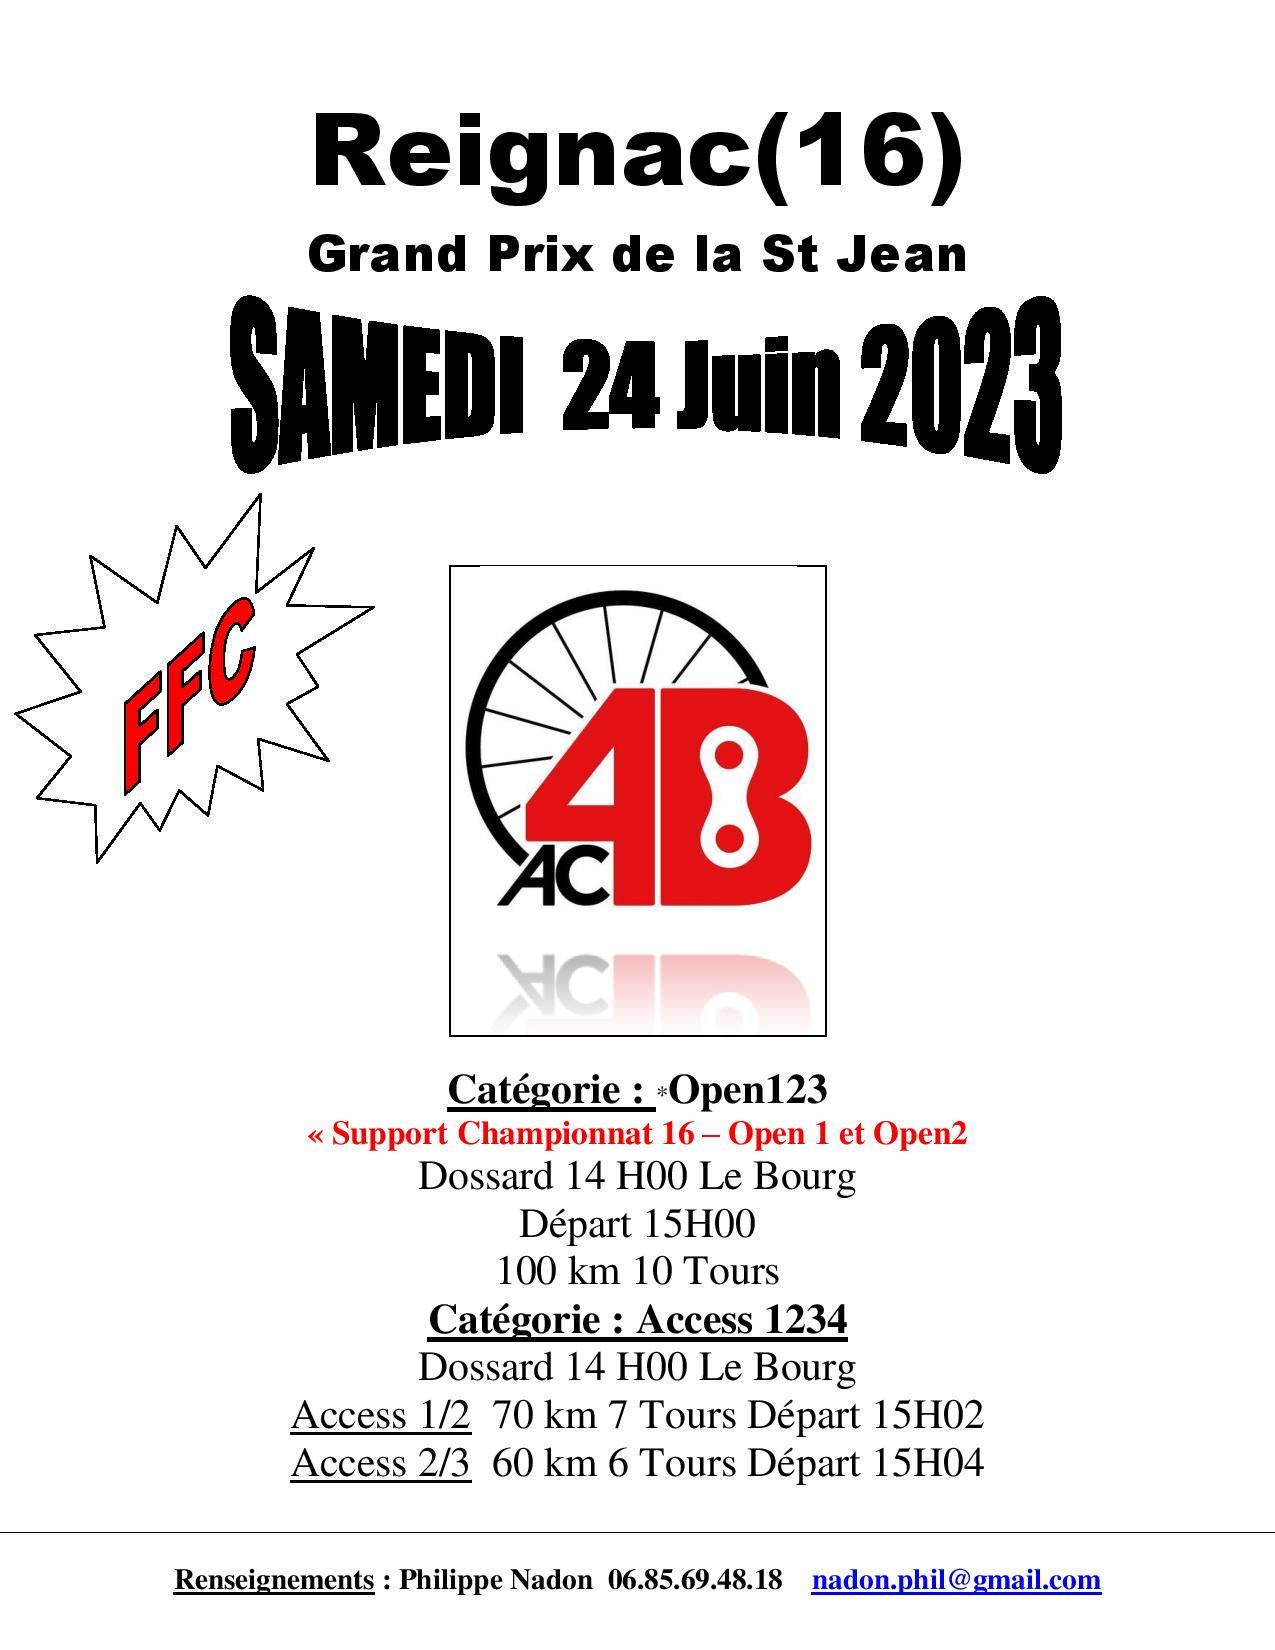 L’AC4B Organise à Reignac (16) Grand Prix de la St Jean . Catégorie : OPEN 123 + Catégorie : ACCESS 1234